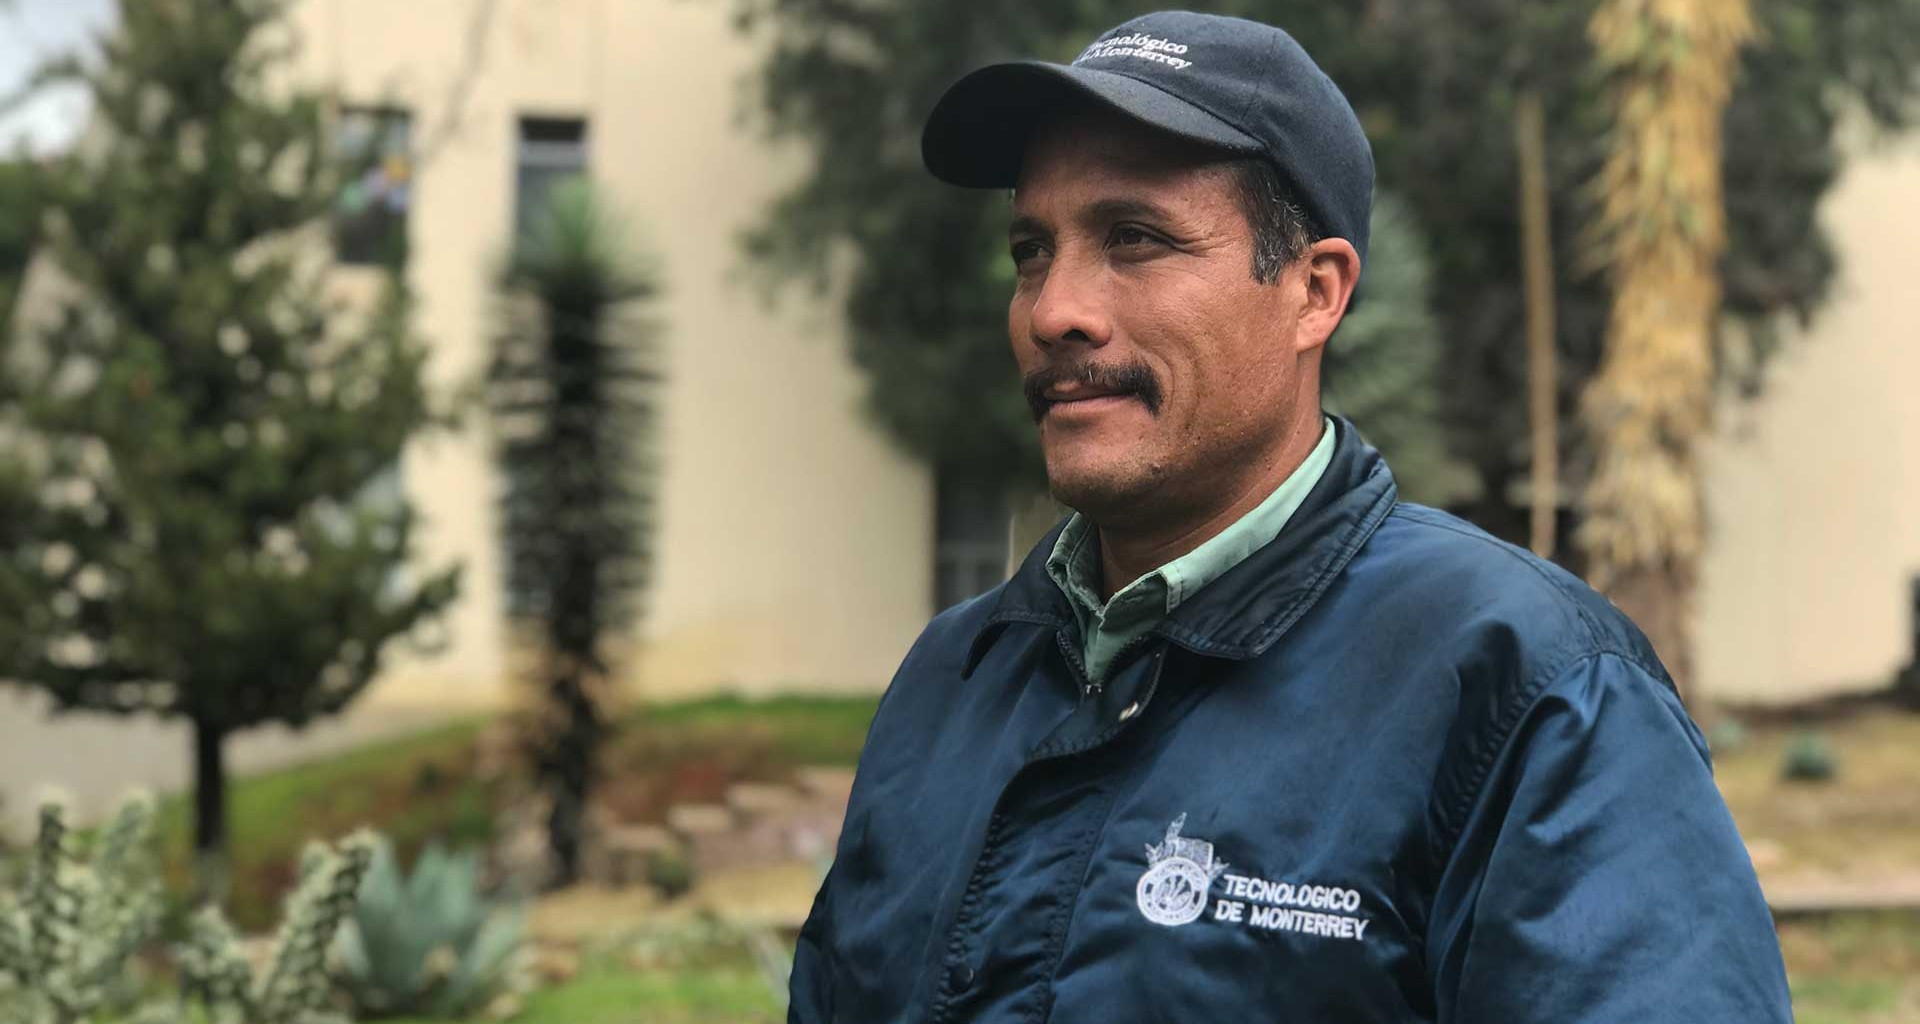  José Refugio de Ávila Saucedo es un jardinero que ha dedicado 20 años de su vida al Tec, ha visto el paso de muchas generaciones y llena de orgullo que personas como él formen parte de esta comunidad.